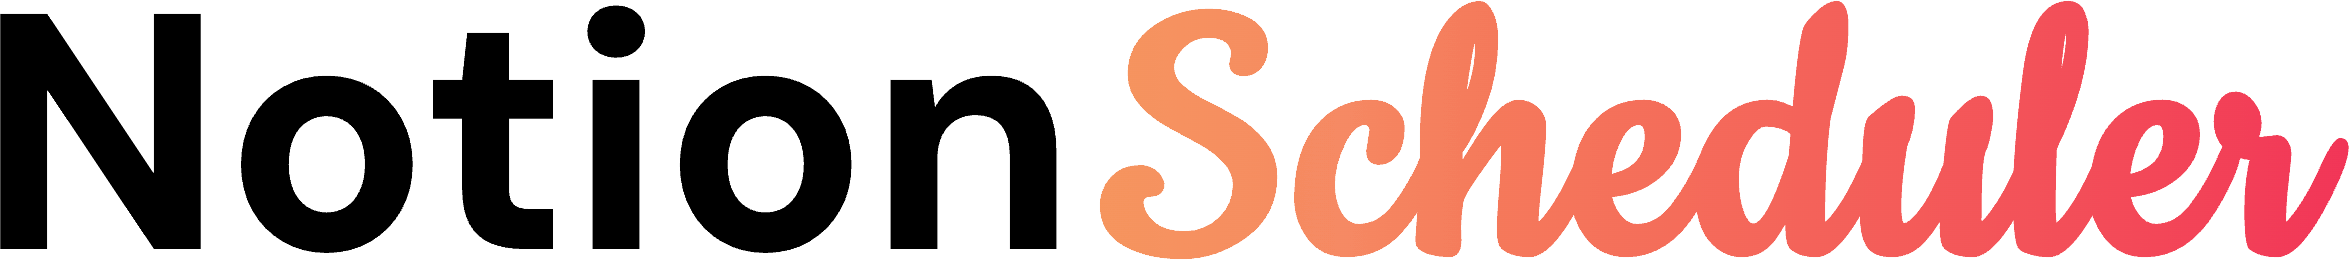 NotionScheduler Logo